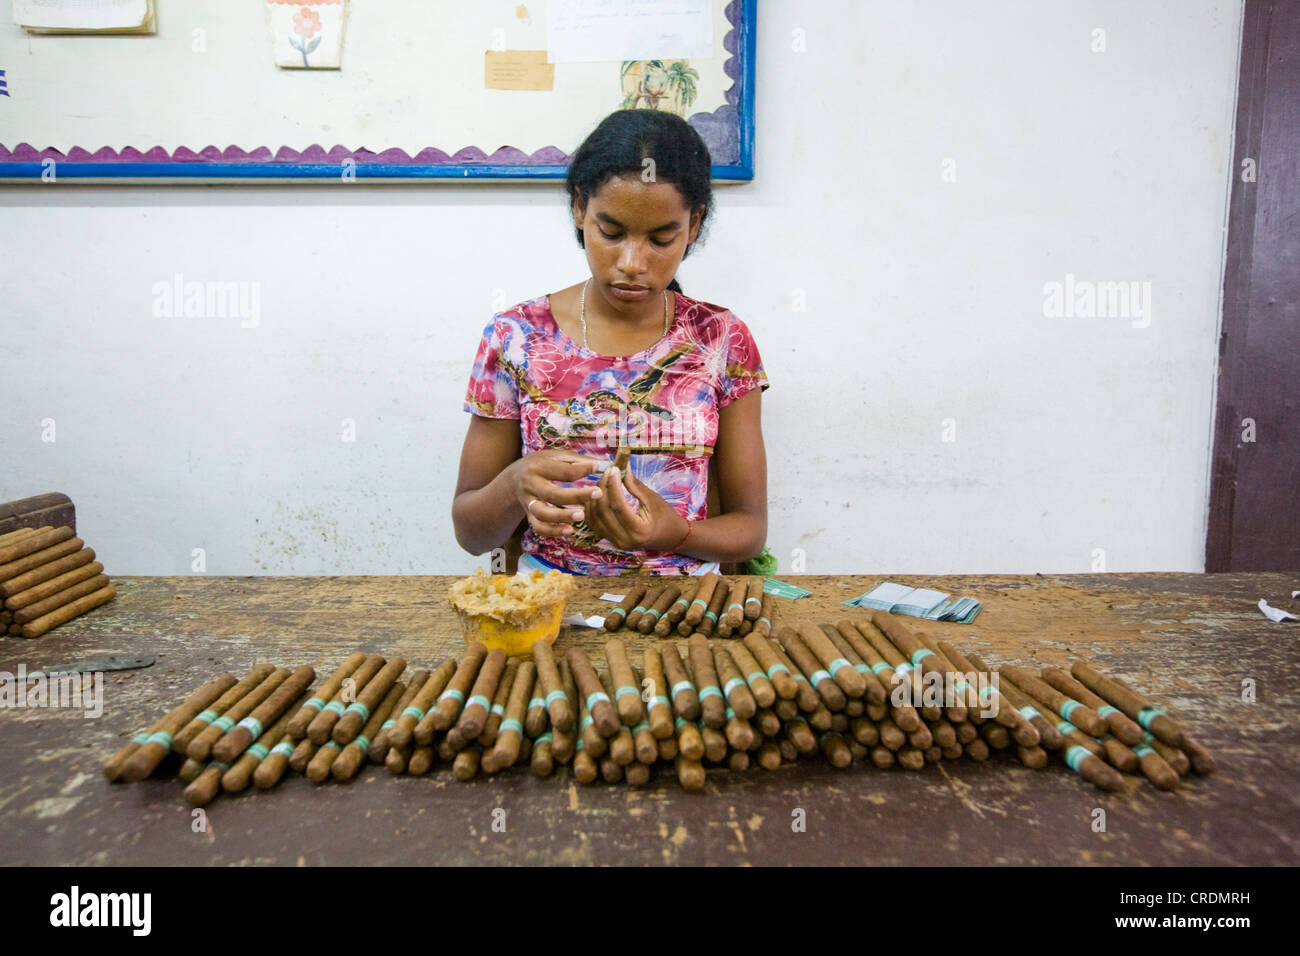 Lavoratore di sesso femminile che di attaccare le etichette per i sigari in una fabbrica di sigari, più di 100 donne che lavorano nella fabrica de Tabaco Carlos Foto Stock